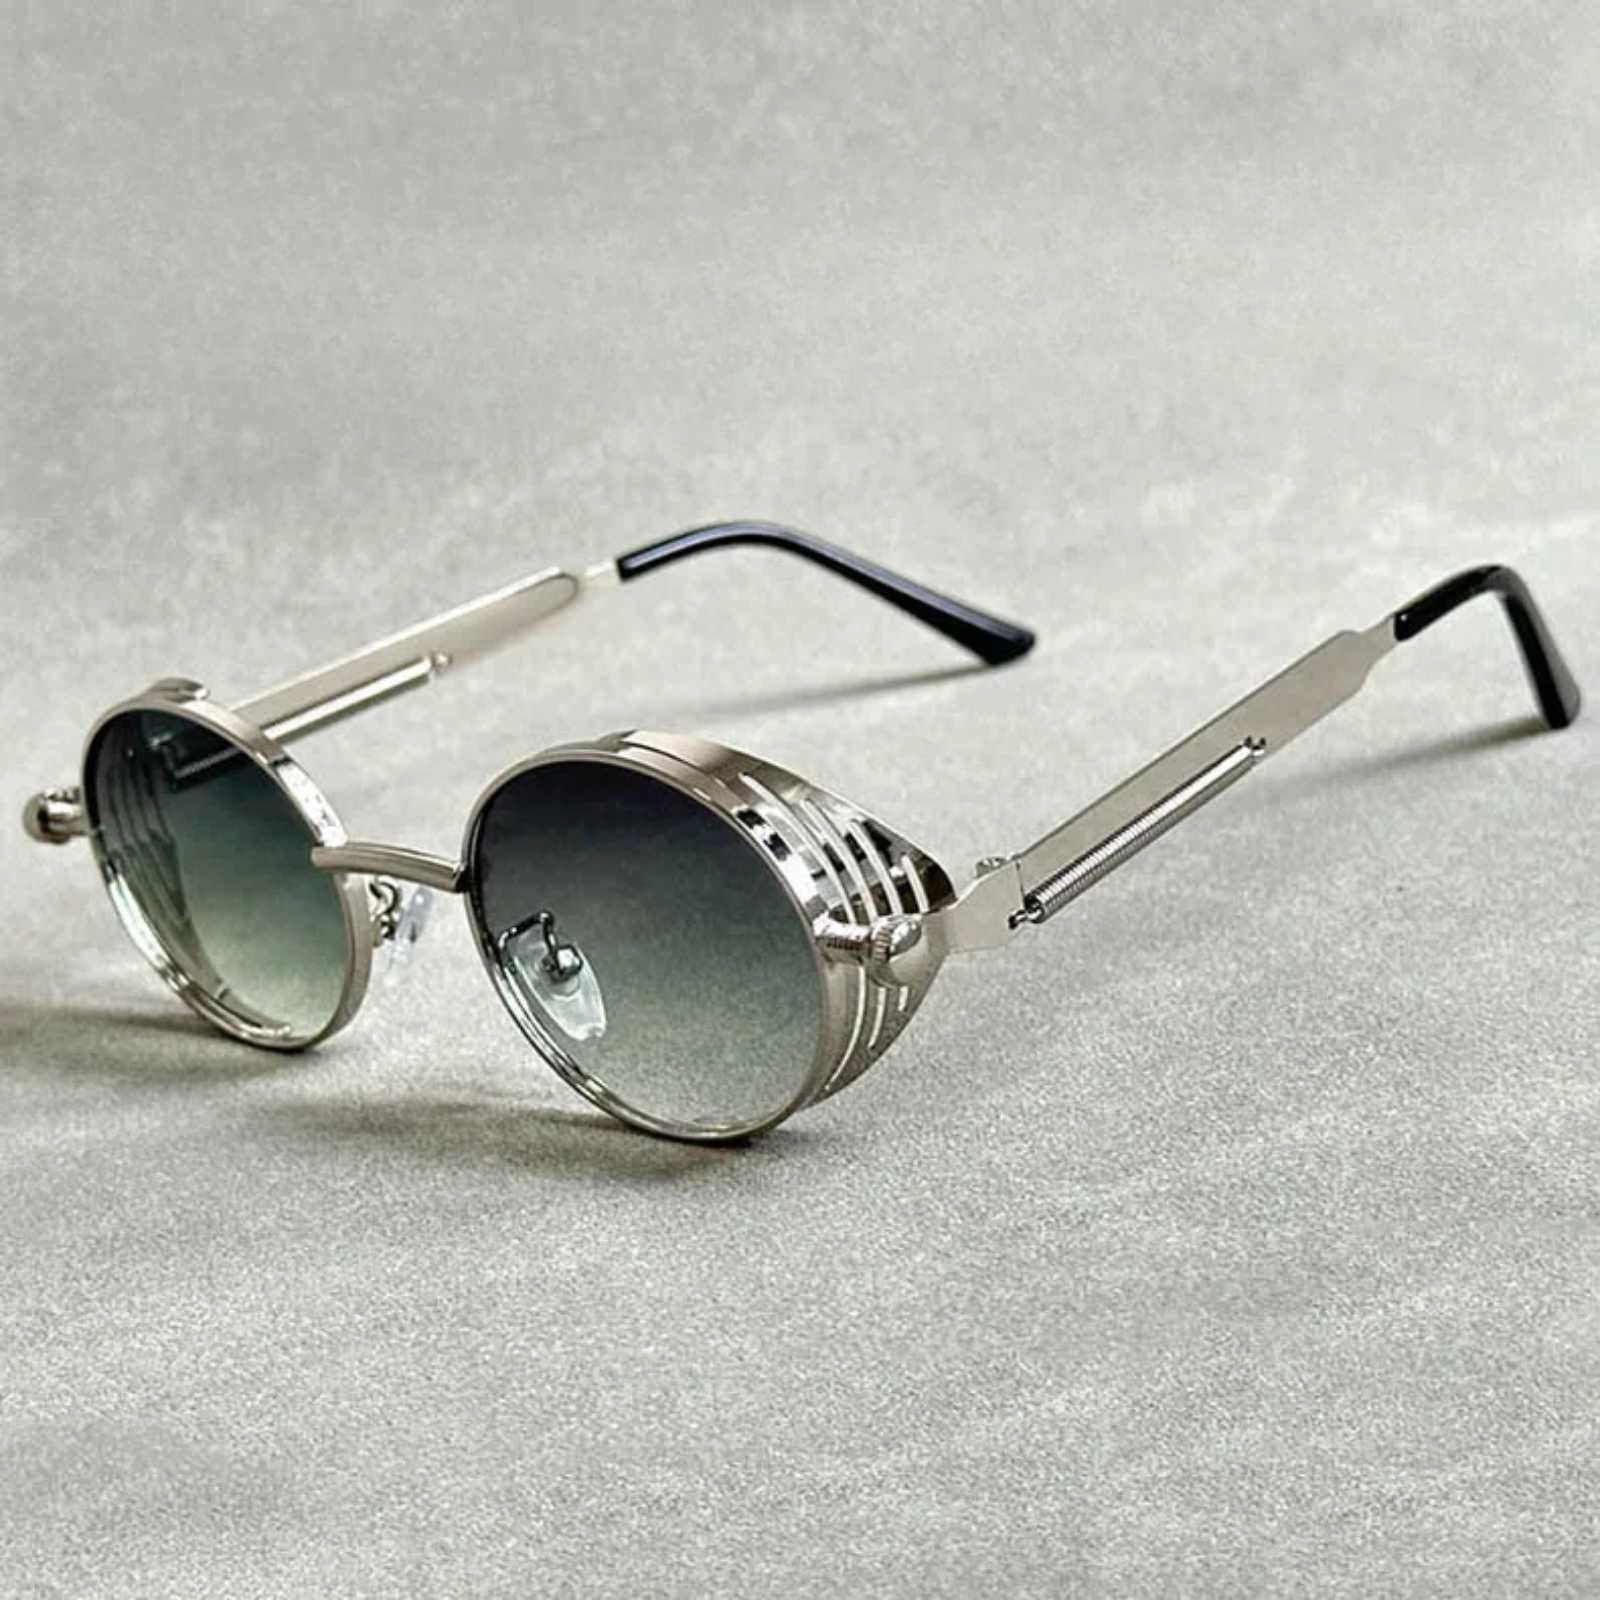 Óculos Steampunk Oval - ZUID